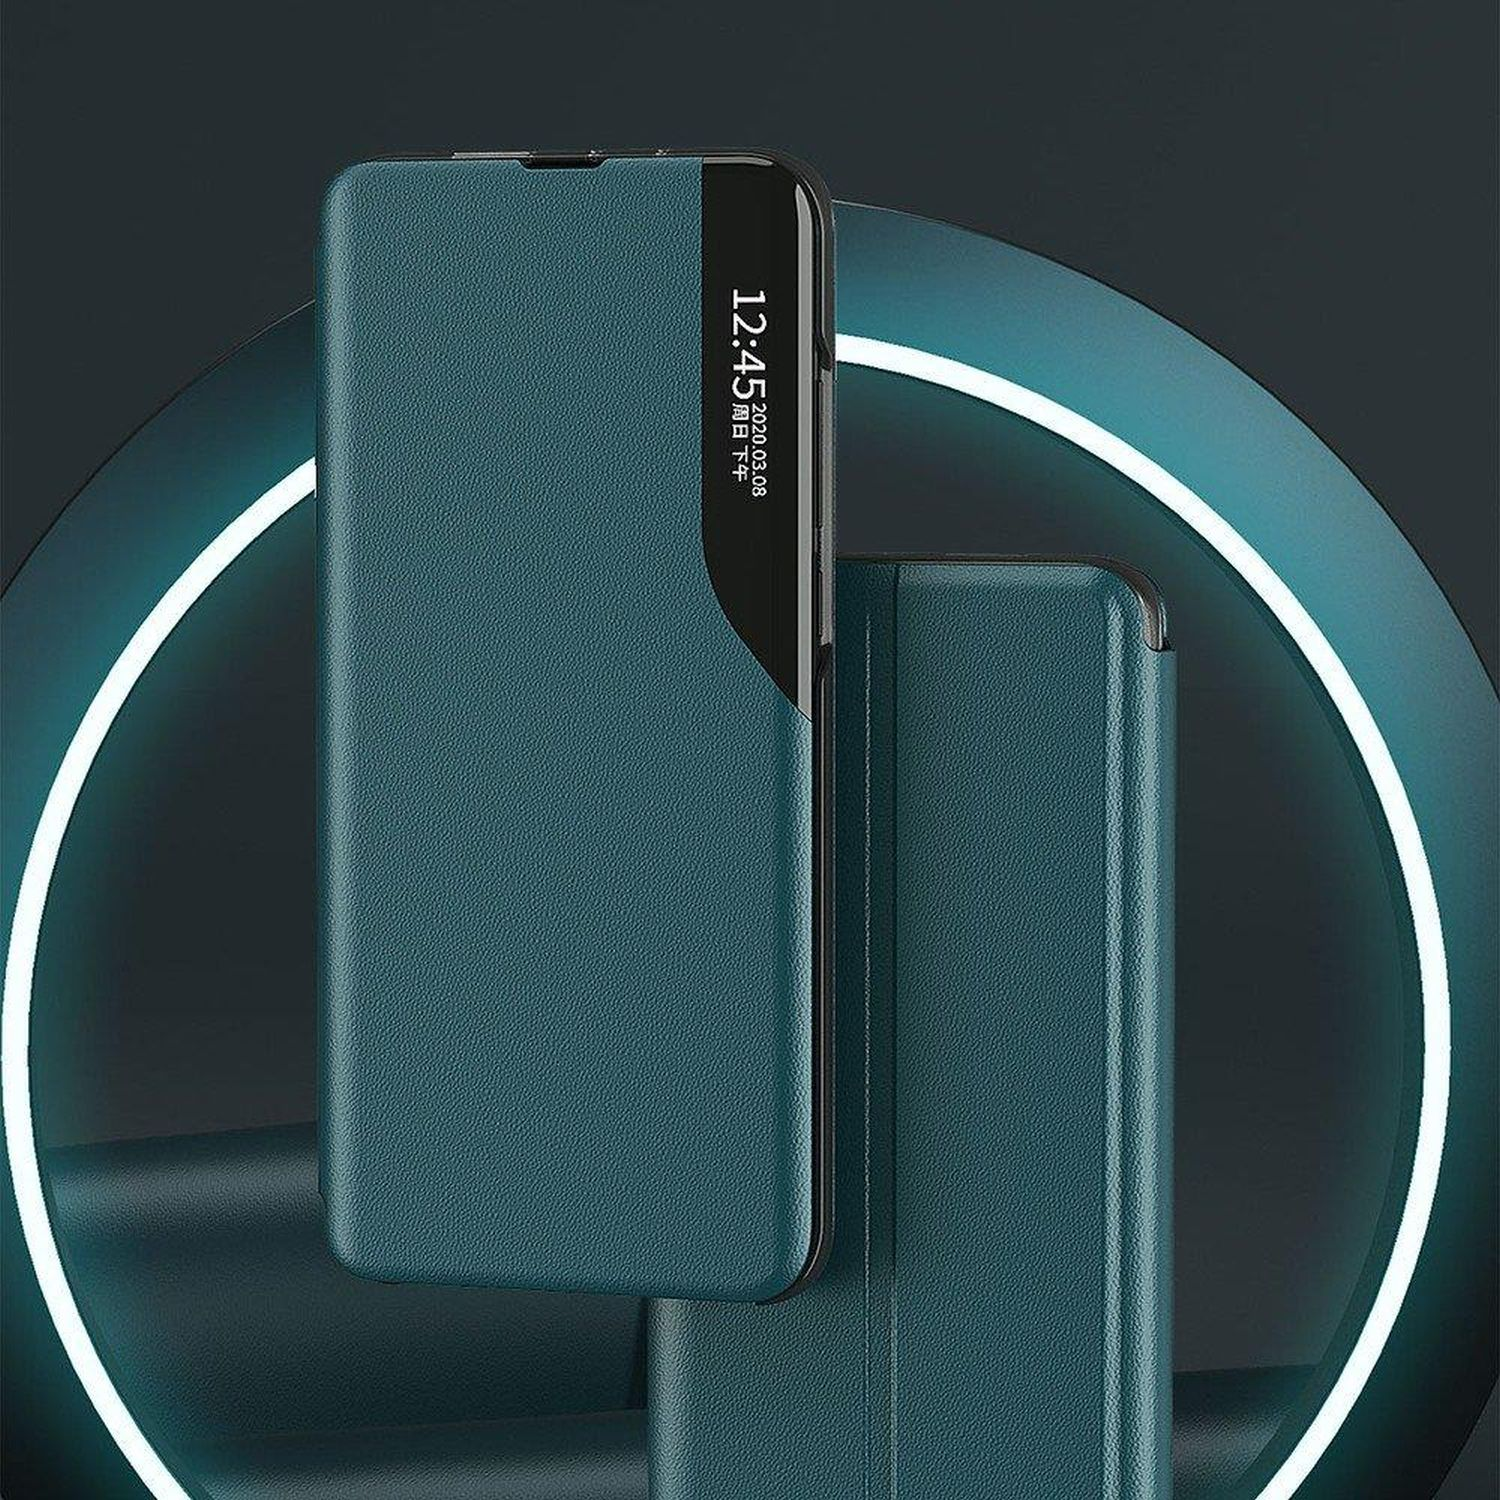 COFI S20 Blau Galaxy View Case, Ultra, Samsung, Bookcover, Smart